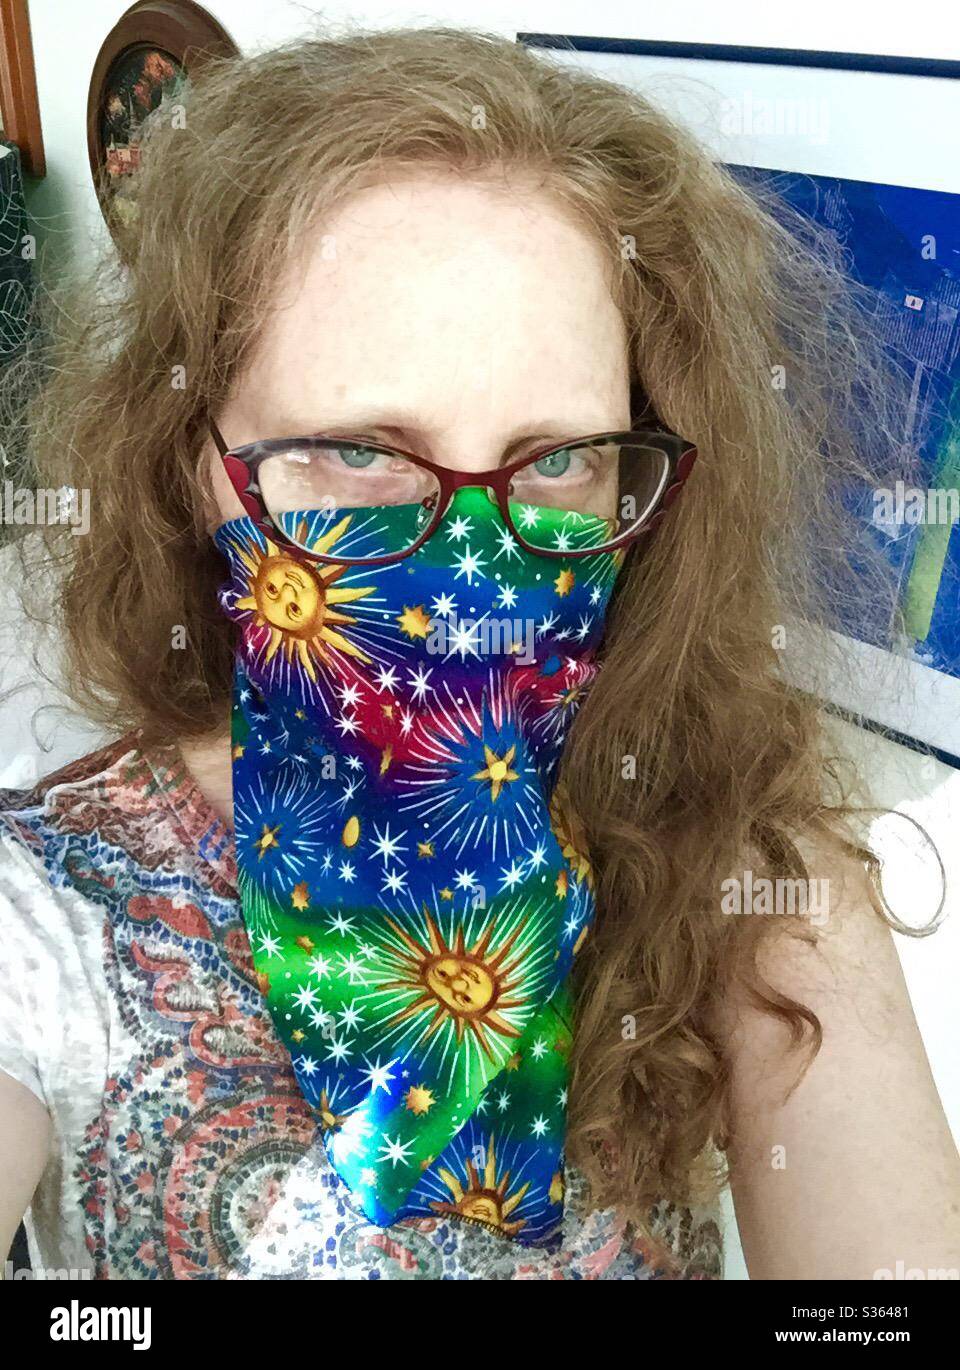 Une femme aux cheveux rouges avec des lunettes porte un mouchoir de fantaisie avec le soleil et des étoiles comme masque, EPI, pour protéger contre la transmission du virus COVID19. Banque D'Images